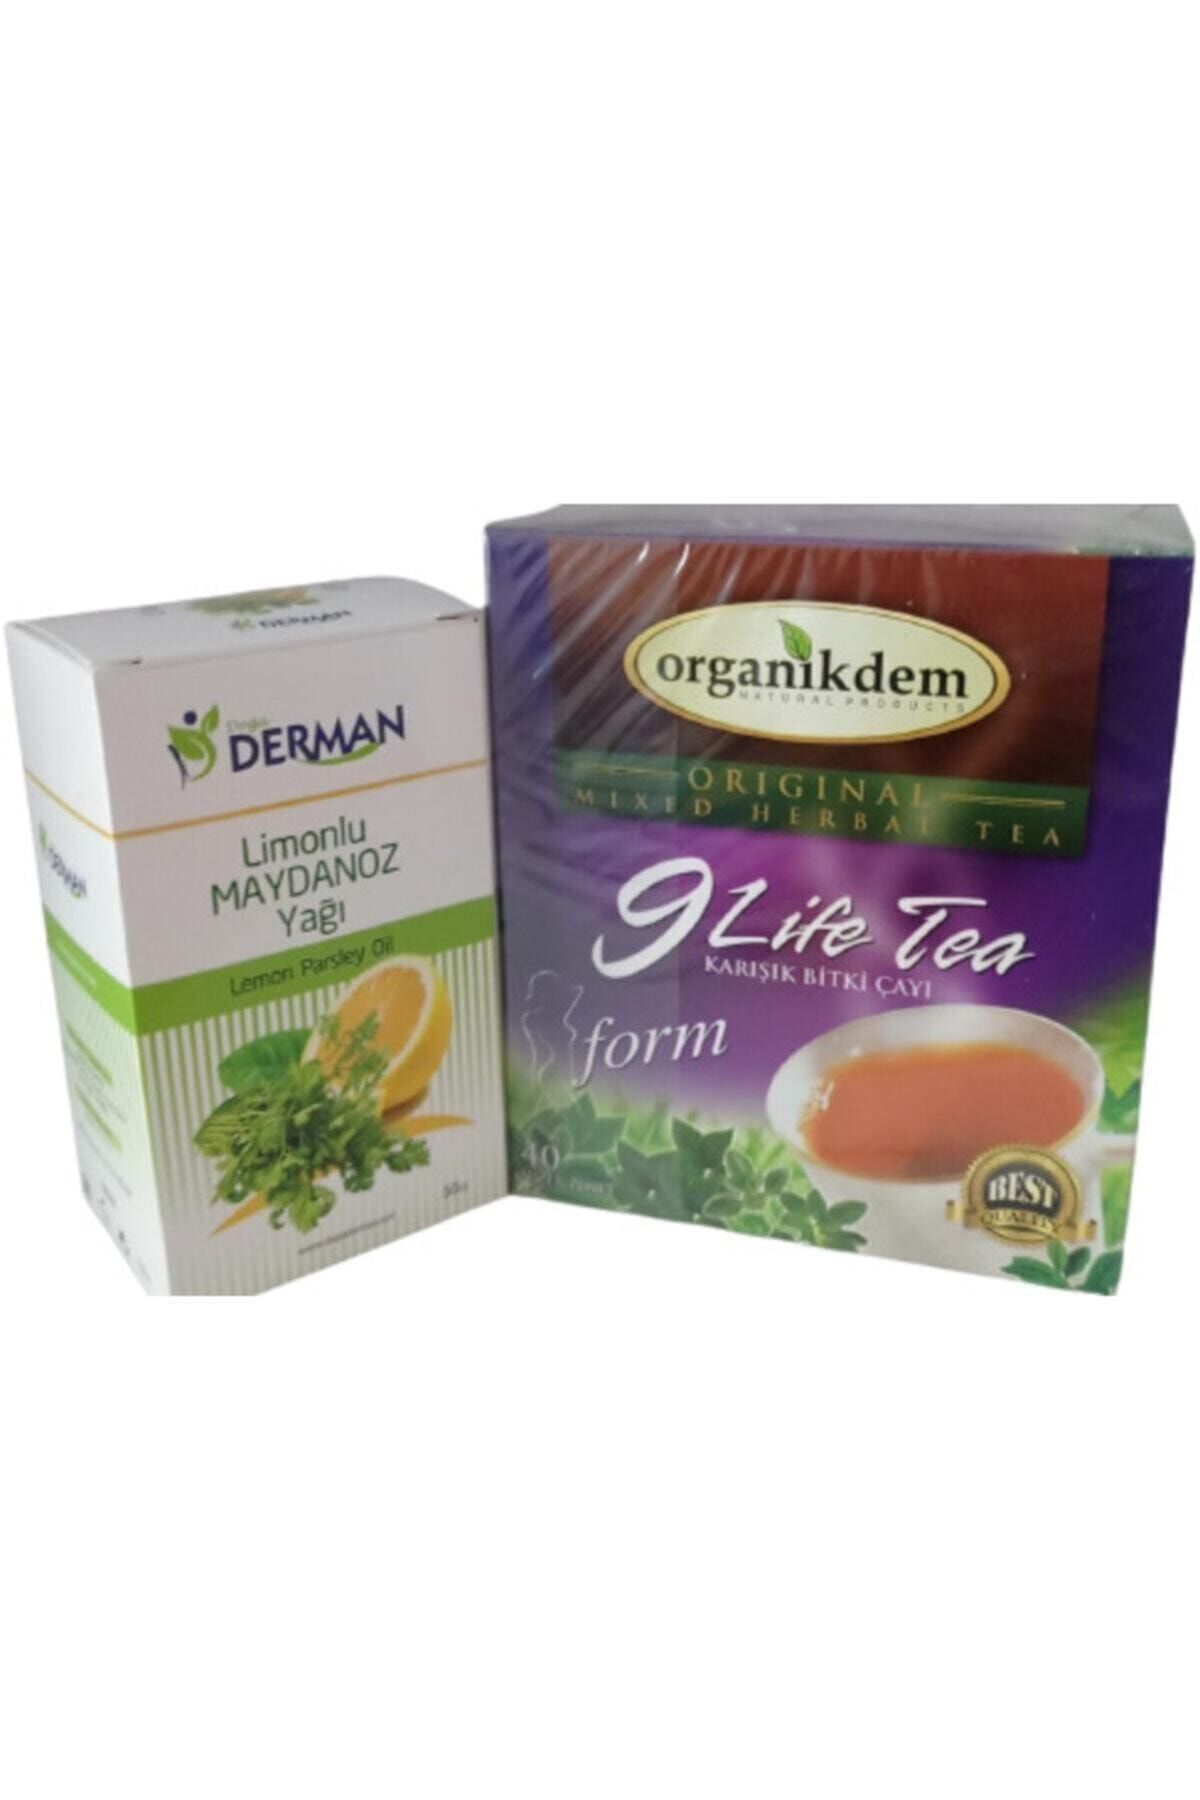 Derman 9 Life Tea (40 Süzen Poşet) & Limon'lu Maydanoz Yağı (50cc)